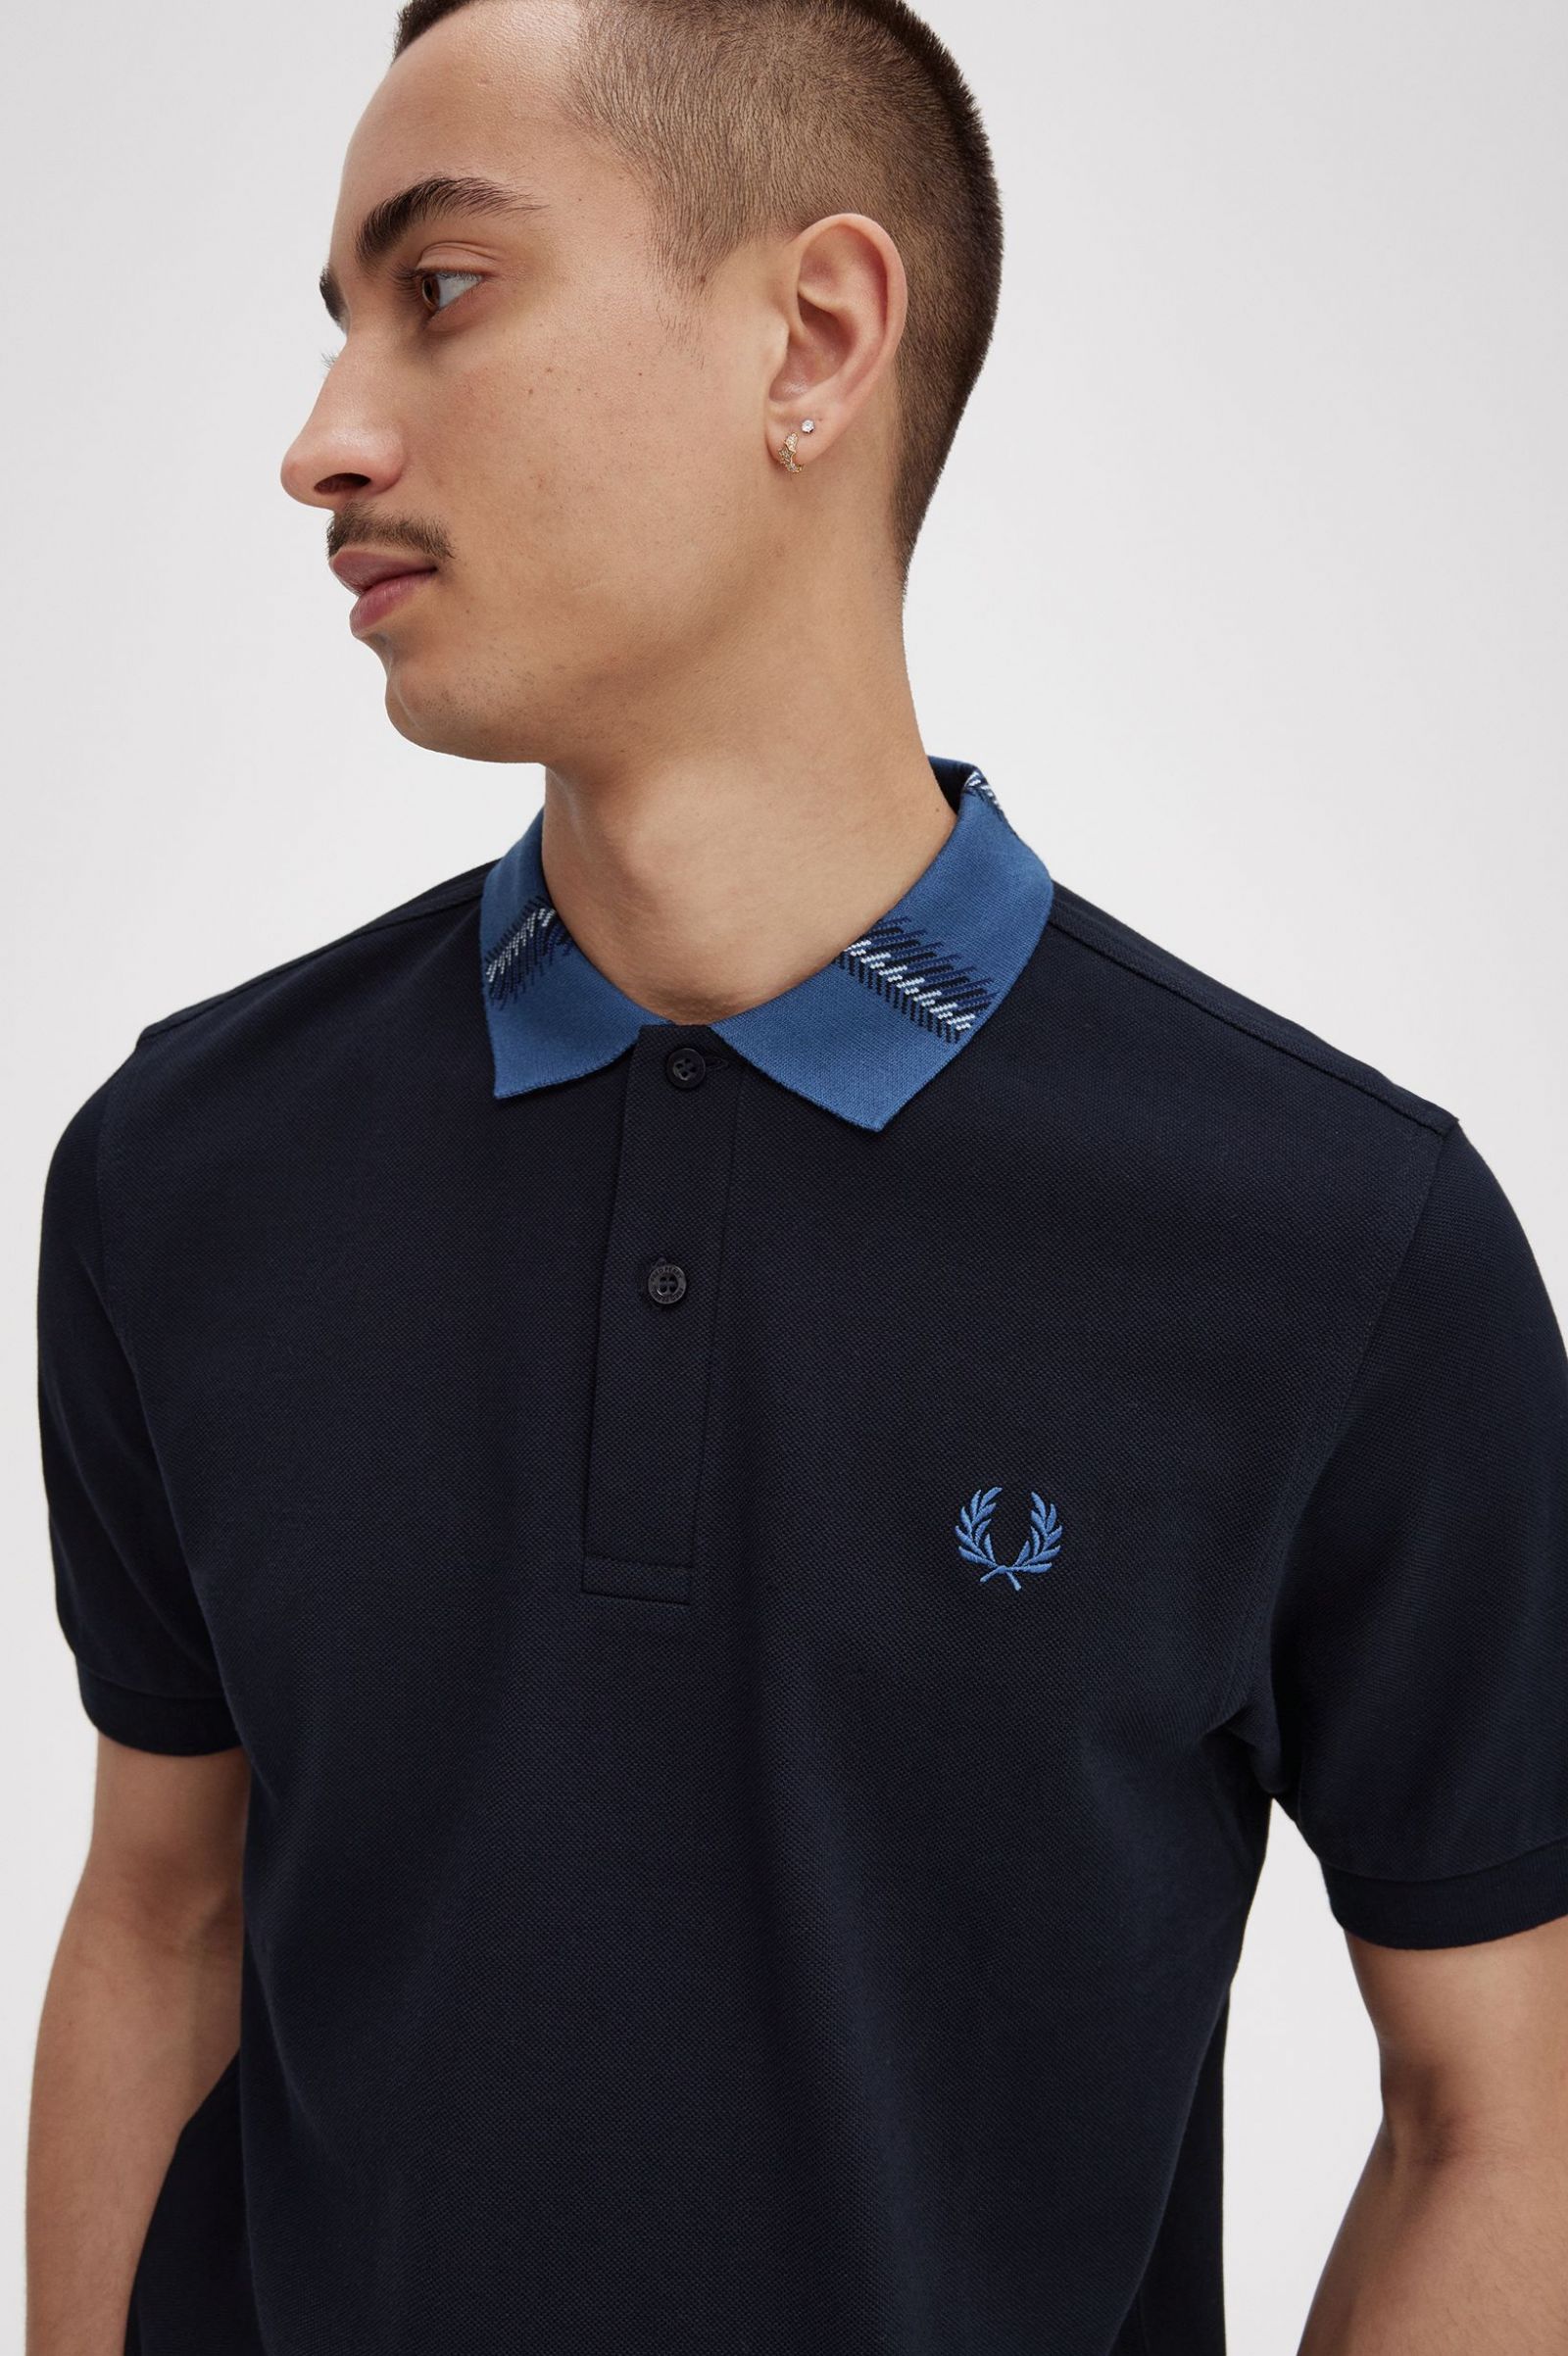 Graphic Collar Polo Shirt - Navy | Men's Polo Shirts | Short 